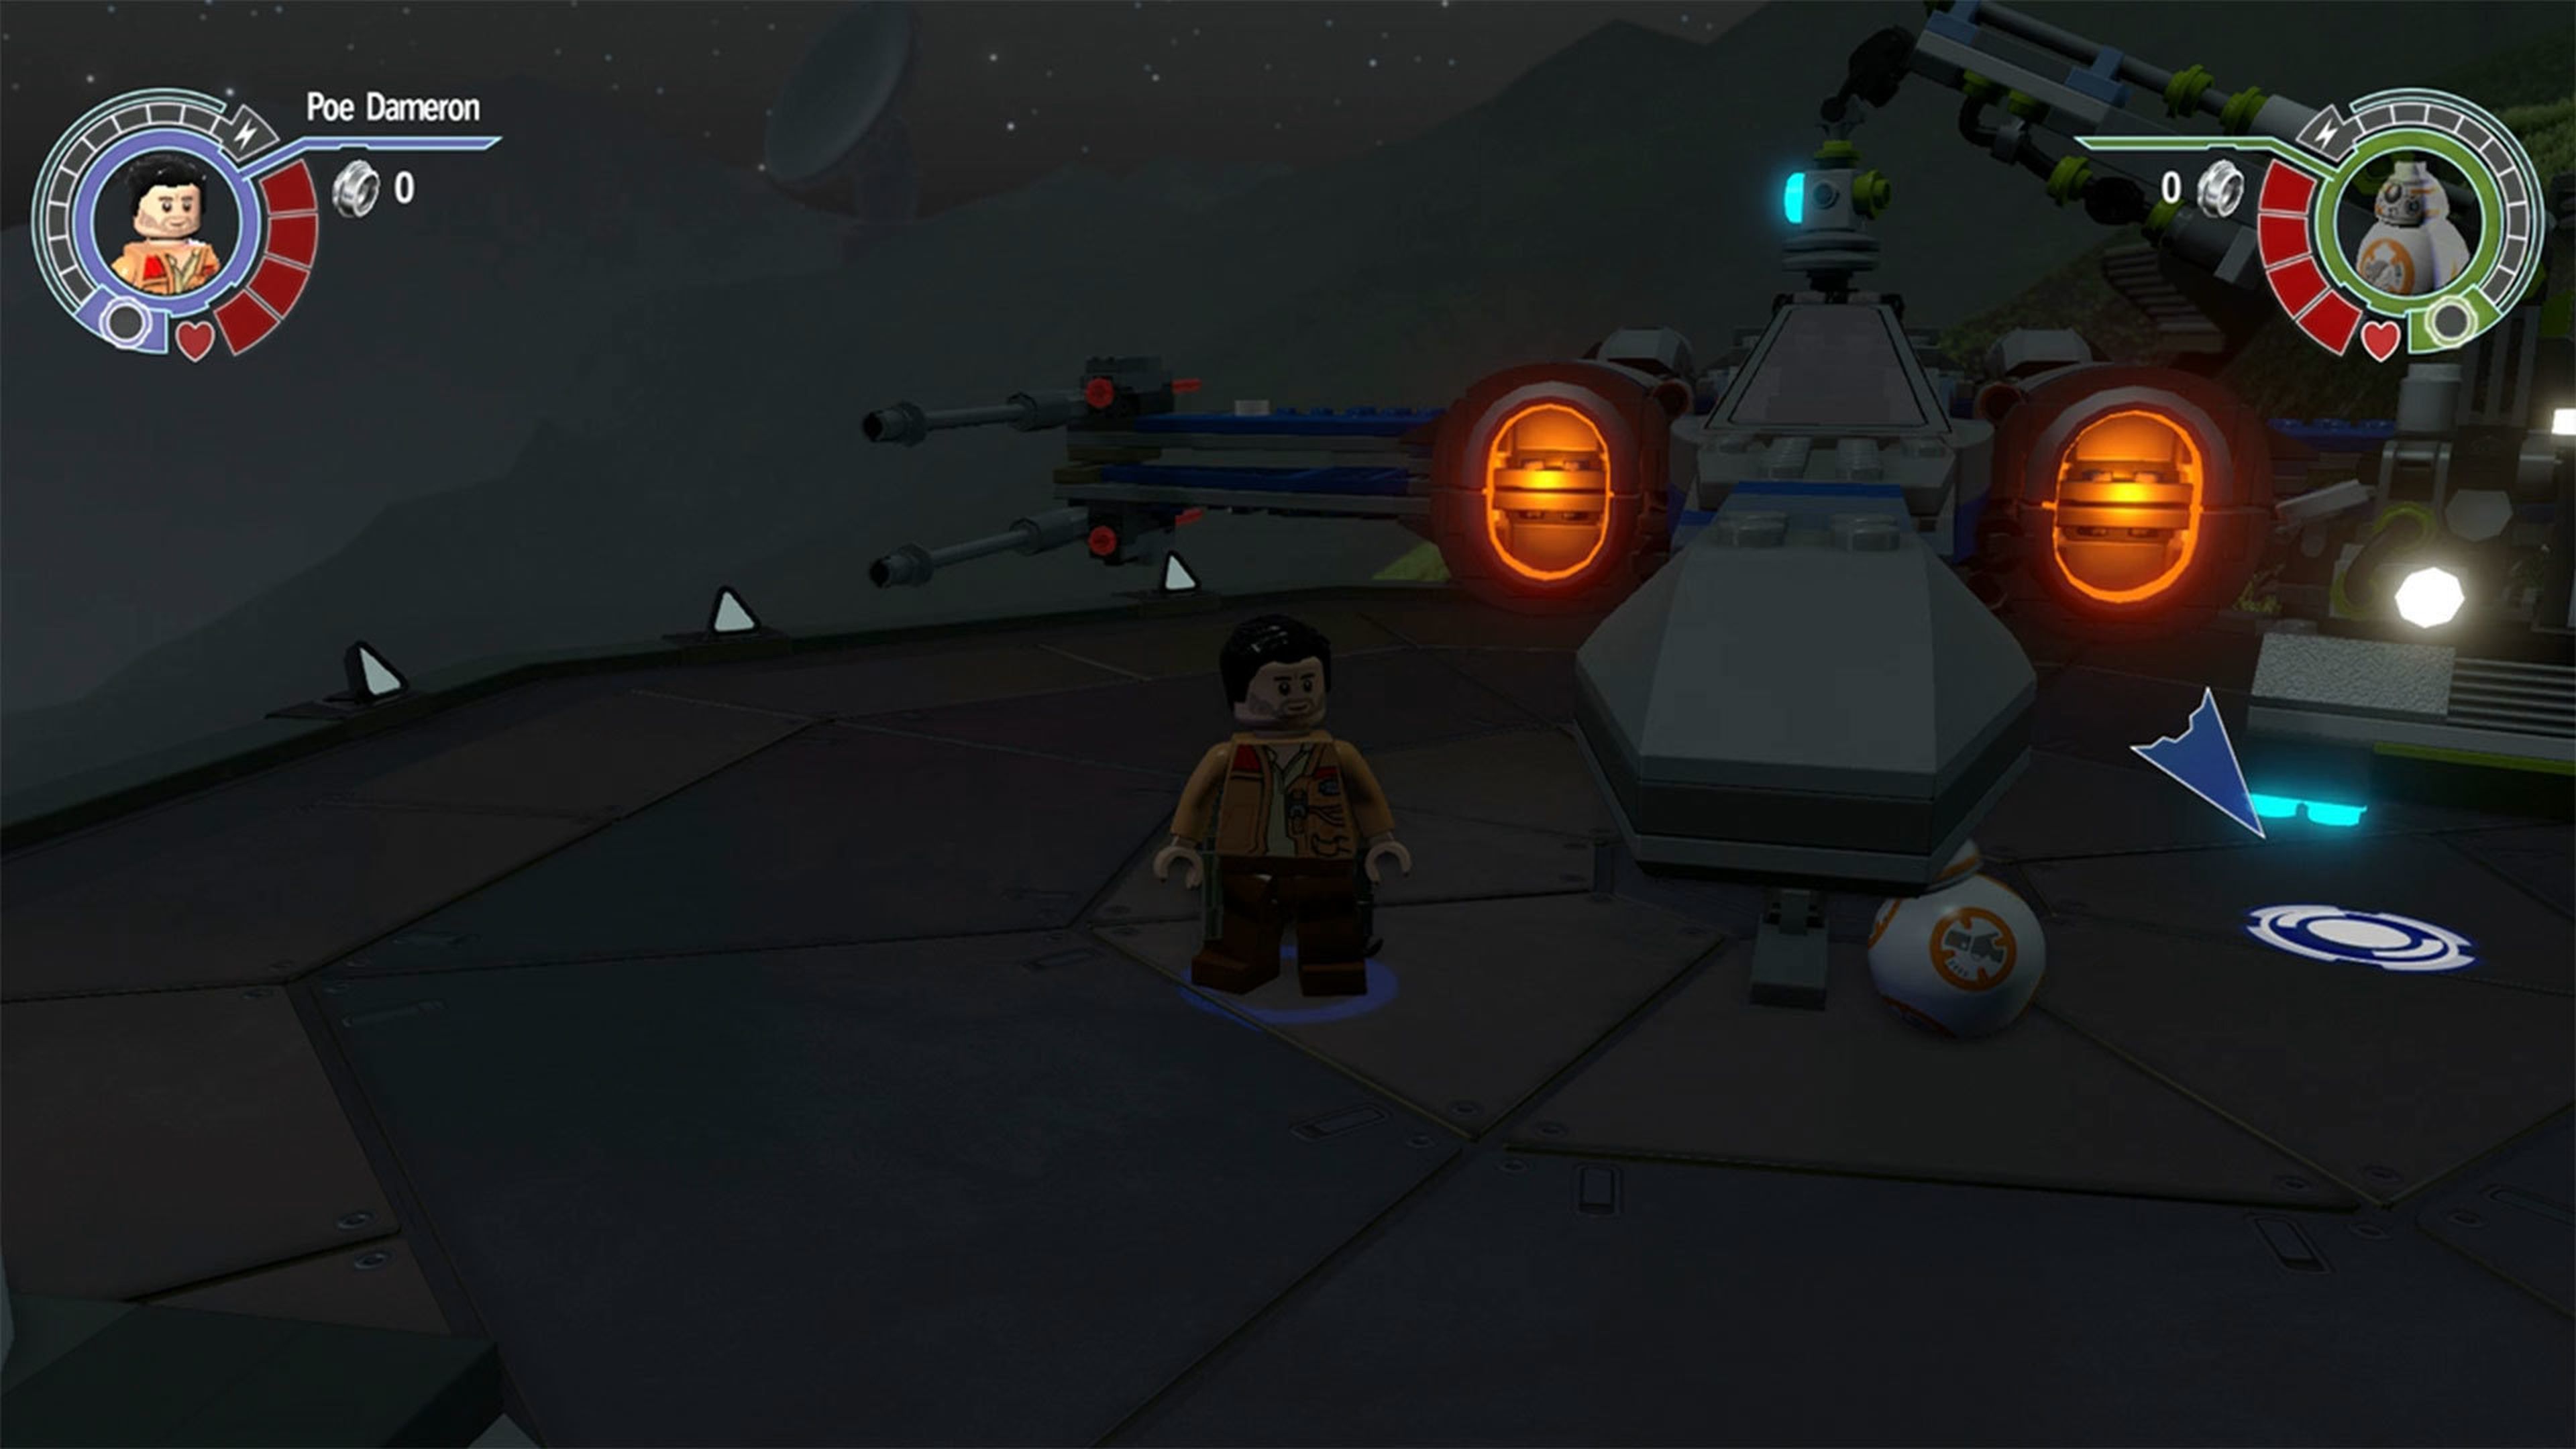 LEGO Star Wars 7 El Despertar de la Fuerza - imágenes gameplay